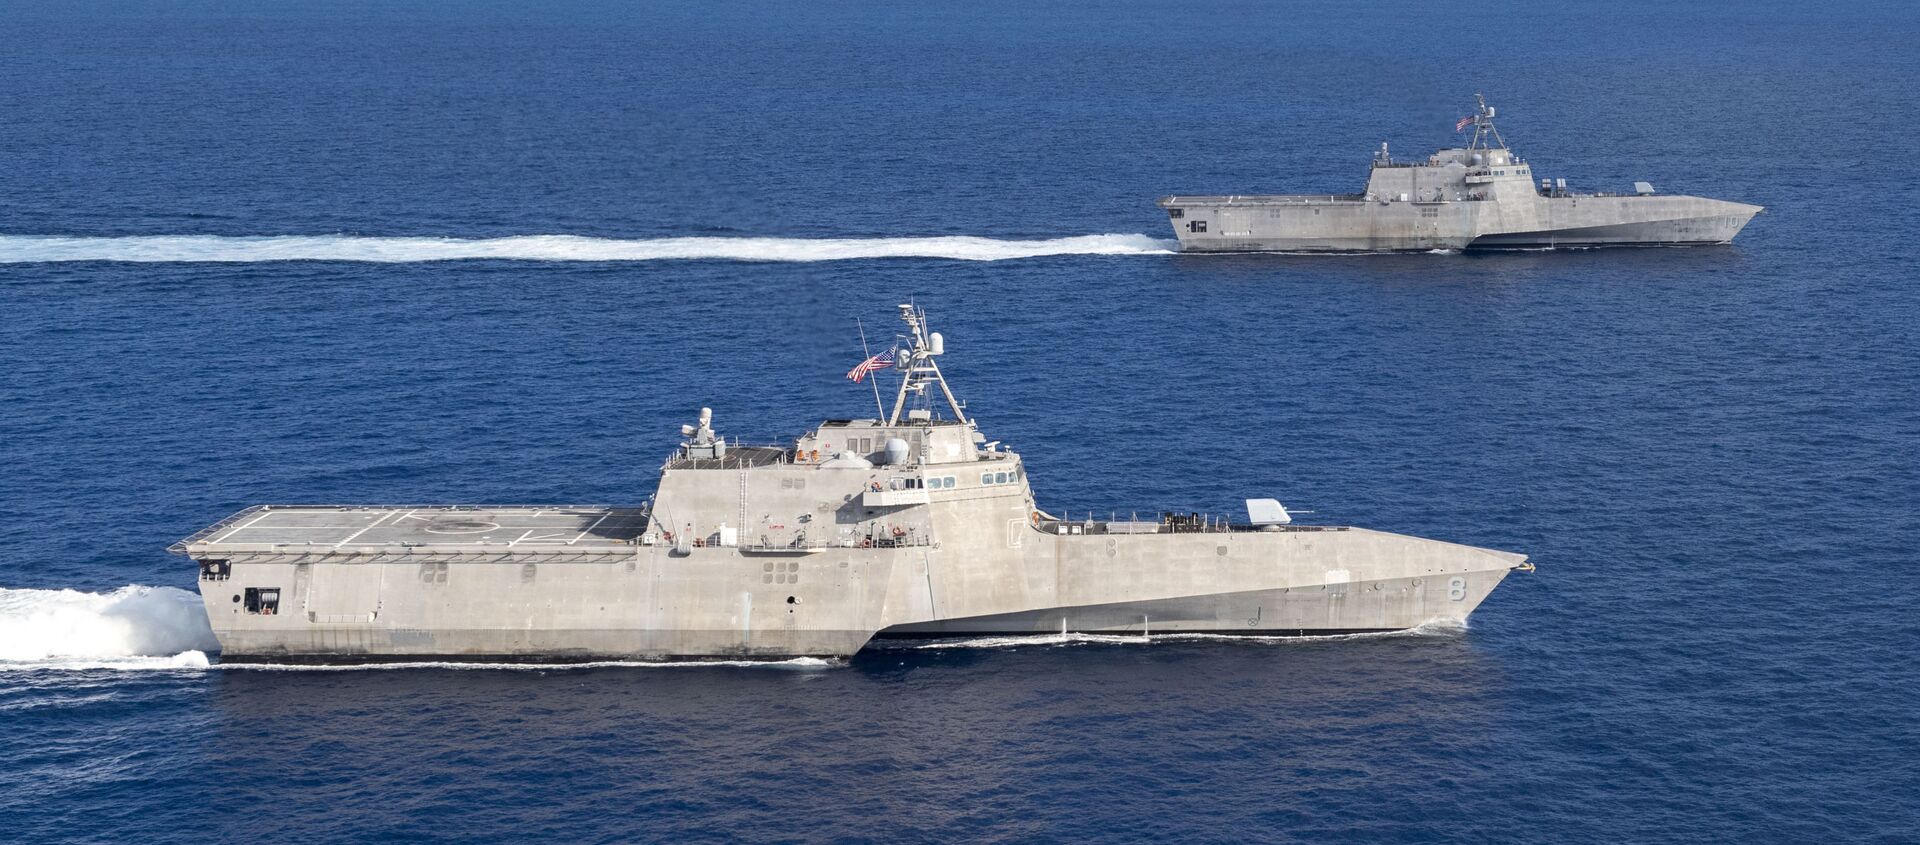 USS Montgomery (LCS 8) USS và Gabrielle Giffords (LCS 10) tàu chiến duyên hải ở Biển Đông vào ngày 28 tháng 1 năm 2020. - Sputnik Việt Nam, 1920, 05.03.2021